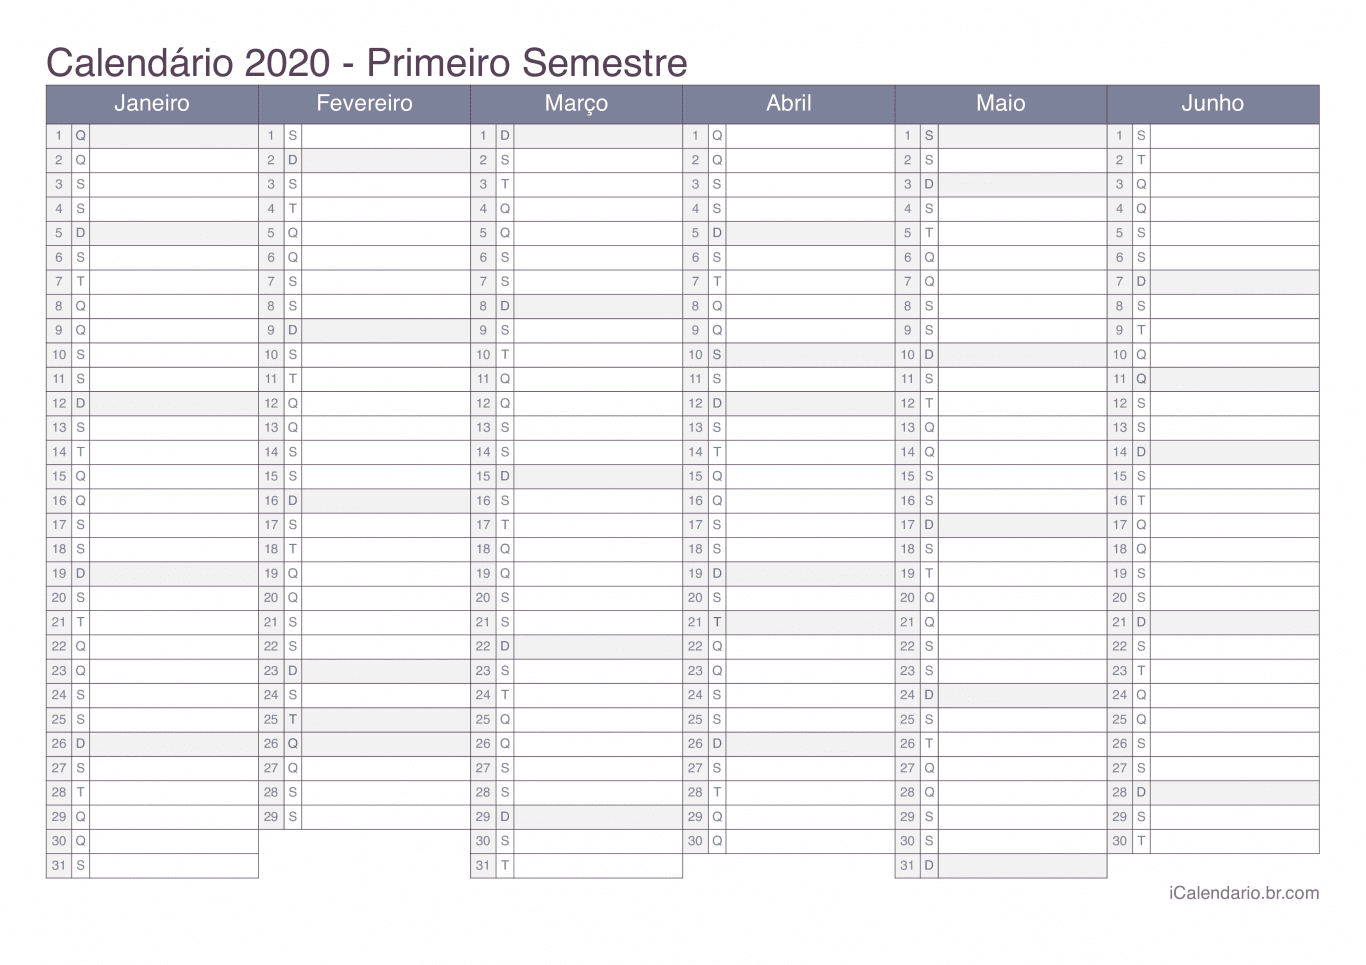 Calendário por semestre 2020 - Office